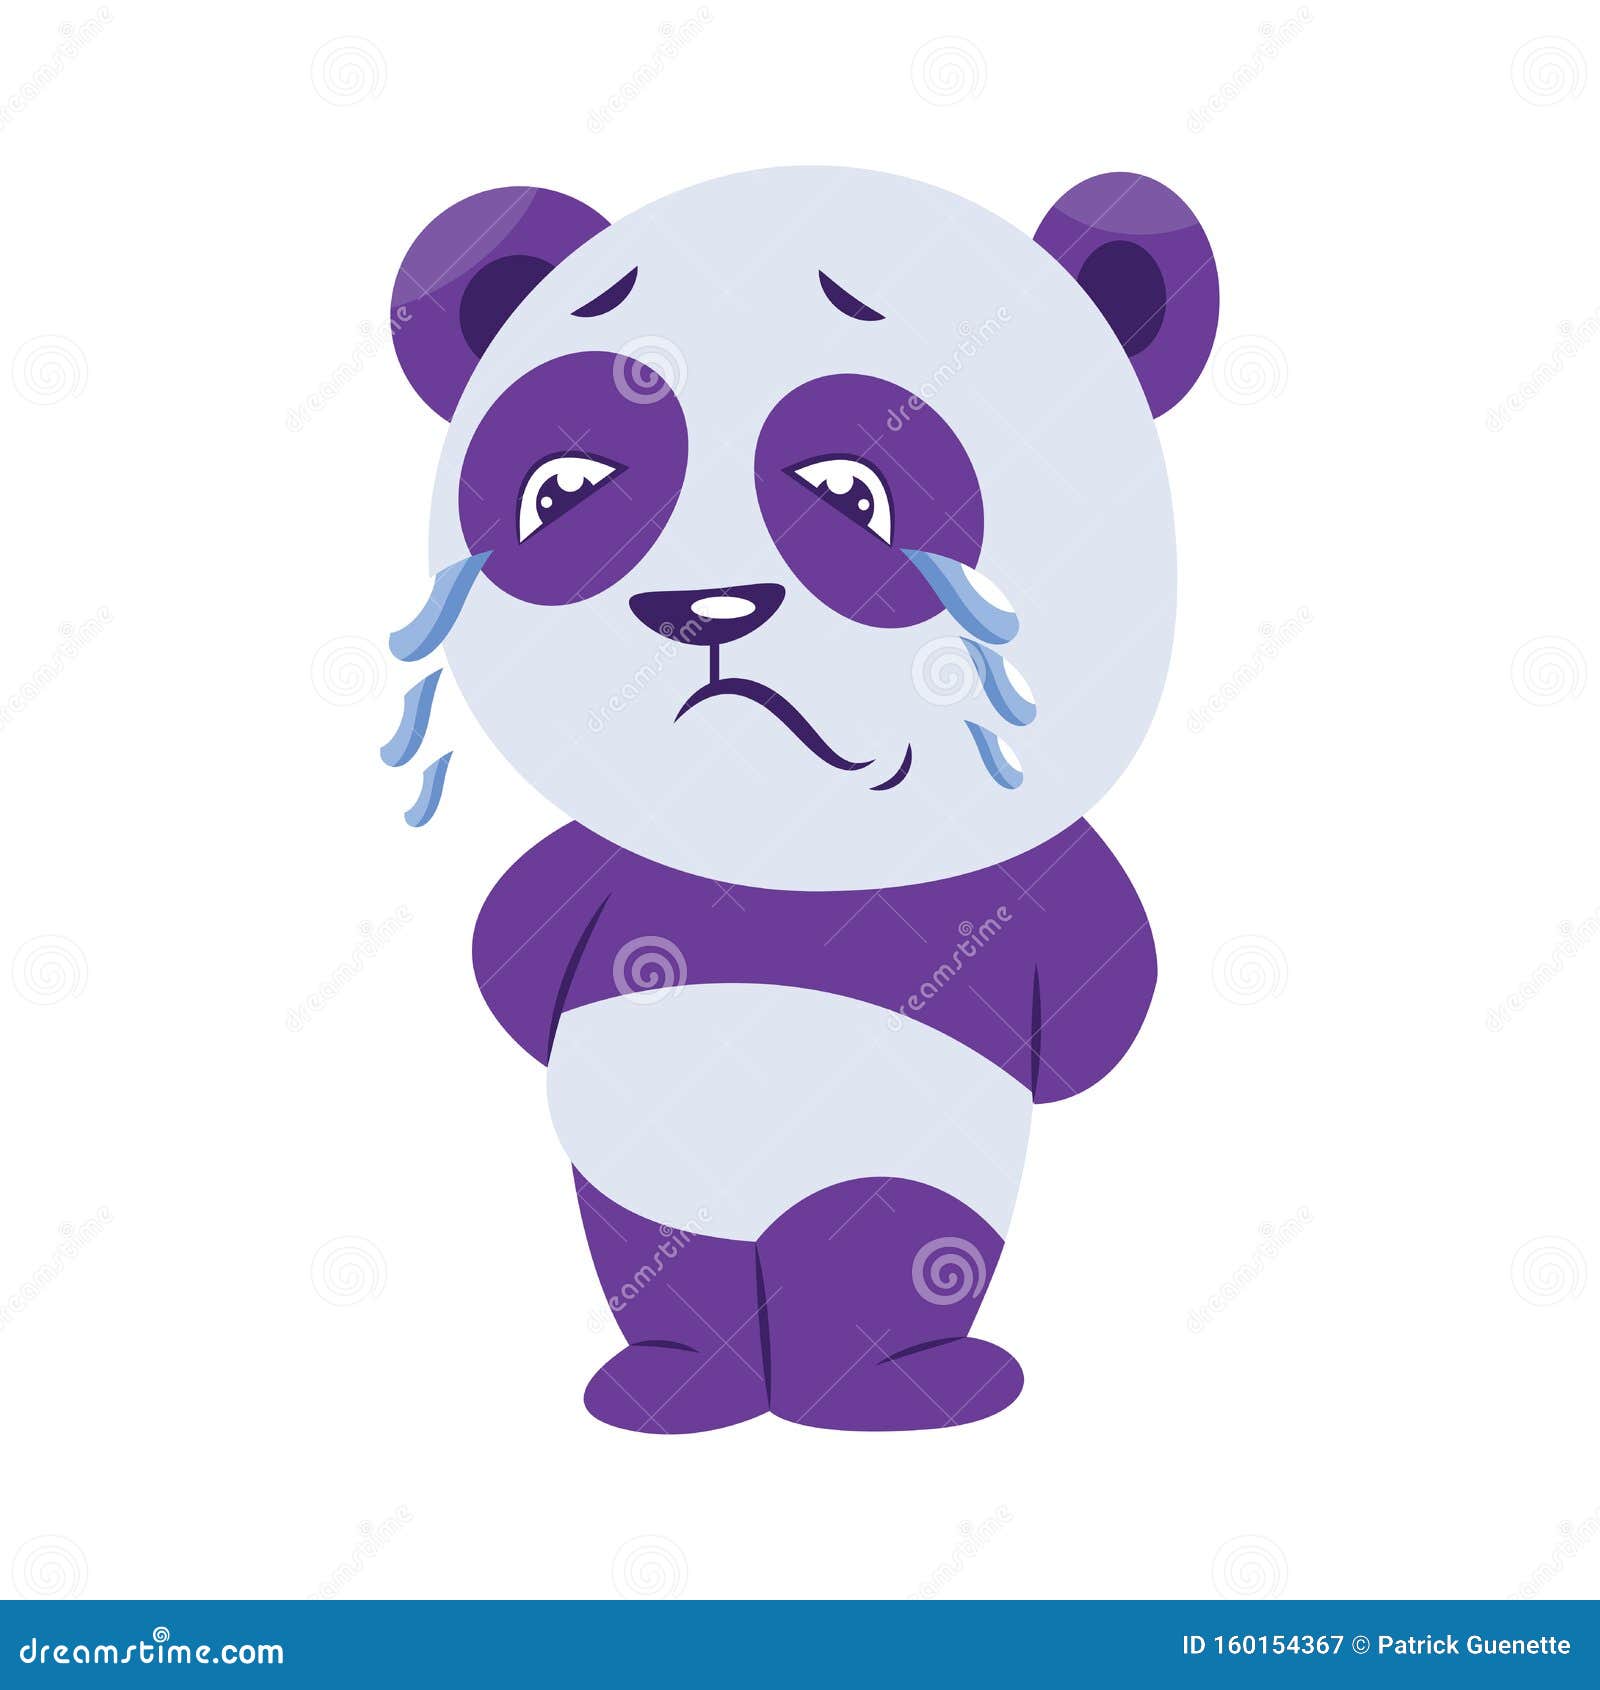 卡通熊貓哭泣表情PNG圖案素材免費下載， 哭泣表情, 哭泣, 傷心向量圖和背景圖庫 - Pngtree